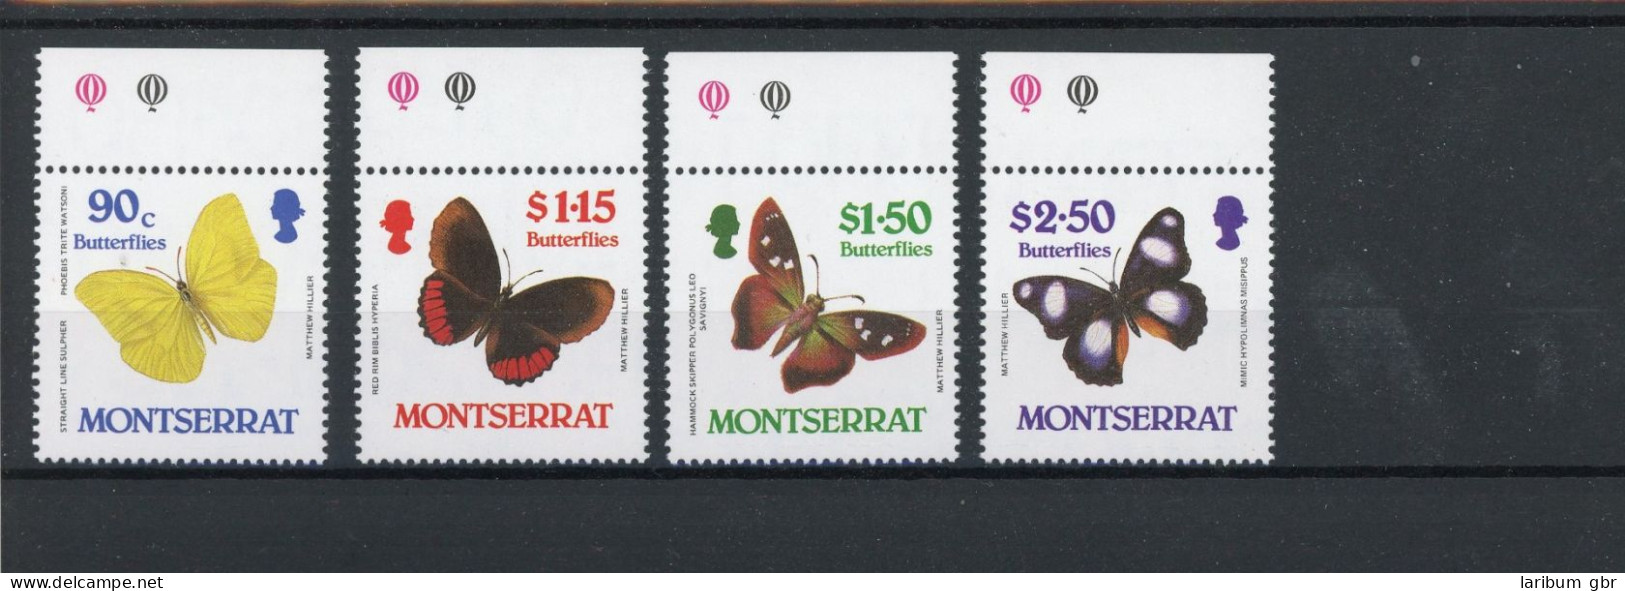 Montserrat 683-86 Postfrisch Schmetterlinge #JT990 - Anguilla (1968-...)